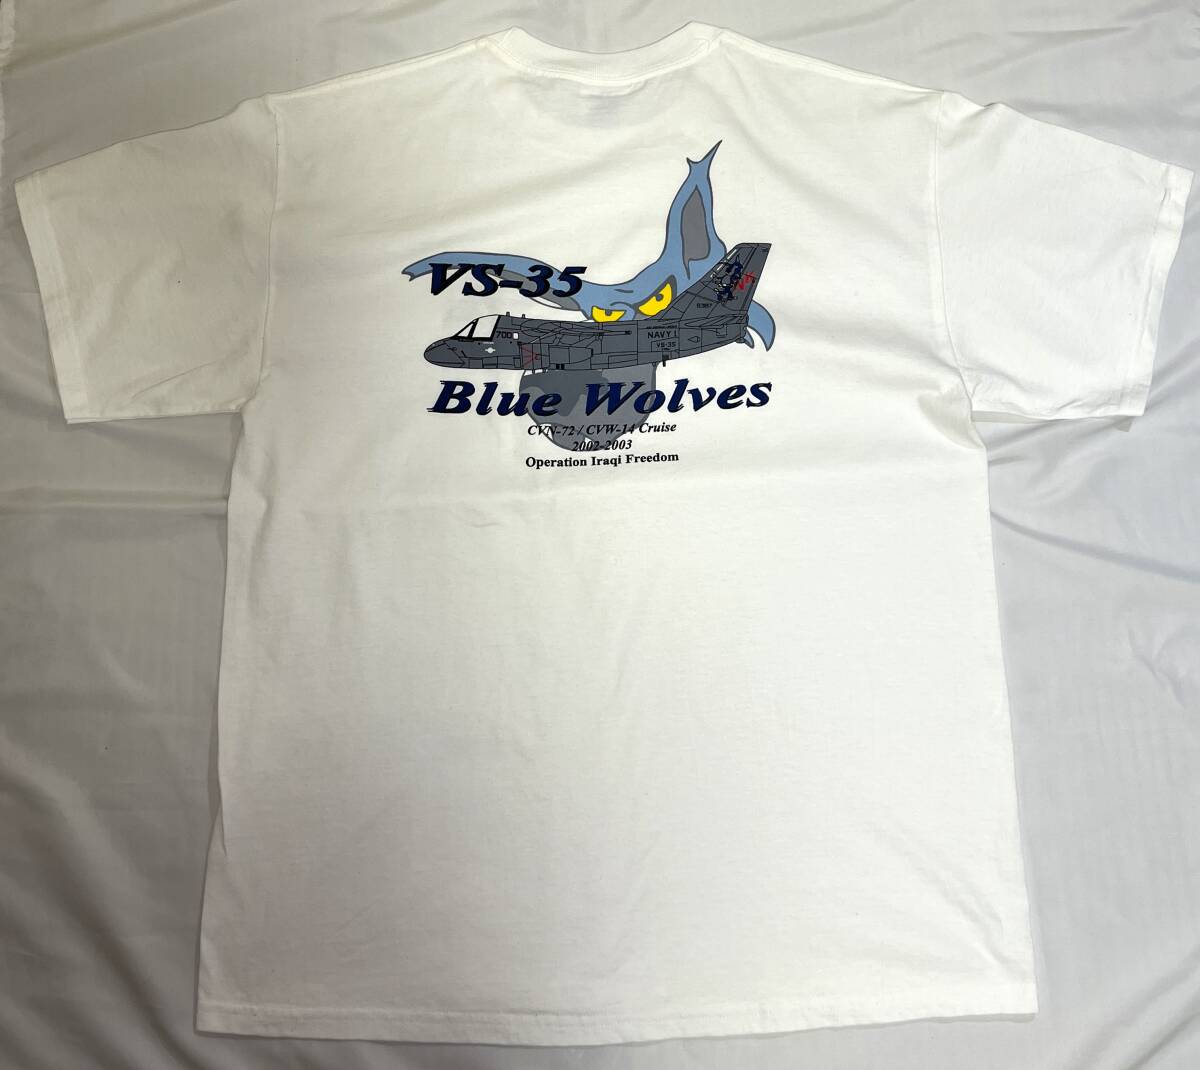 【未使用】米海軍海上制圧飛行隊 VS-35 Blue Wolves Lサイズ Tシャツ 「CVN-72/CVW-14 Cruise 2002-2003 Operation Iraqi Freedom」R43_画像4